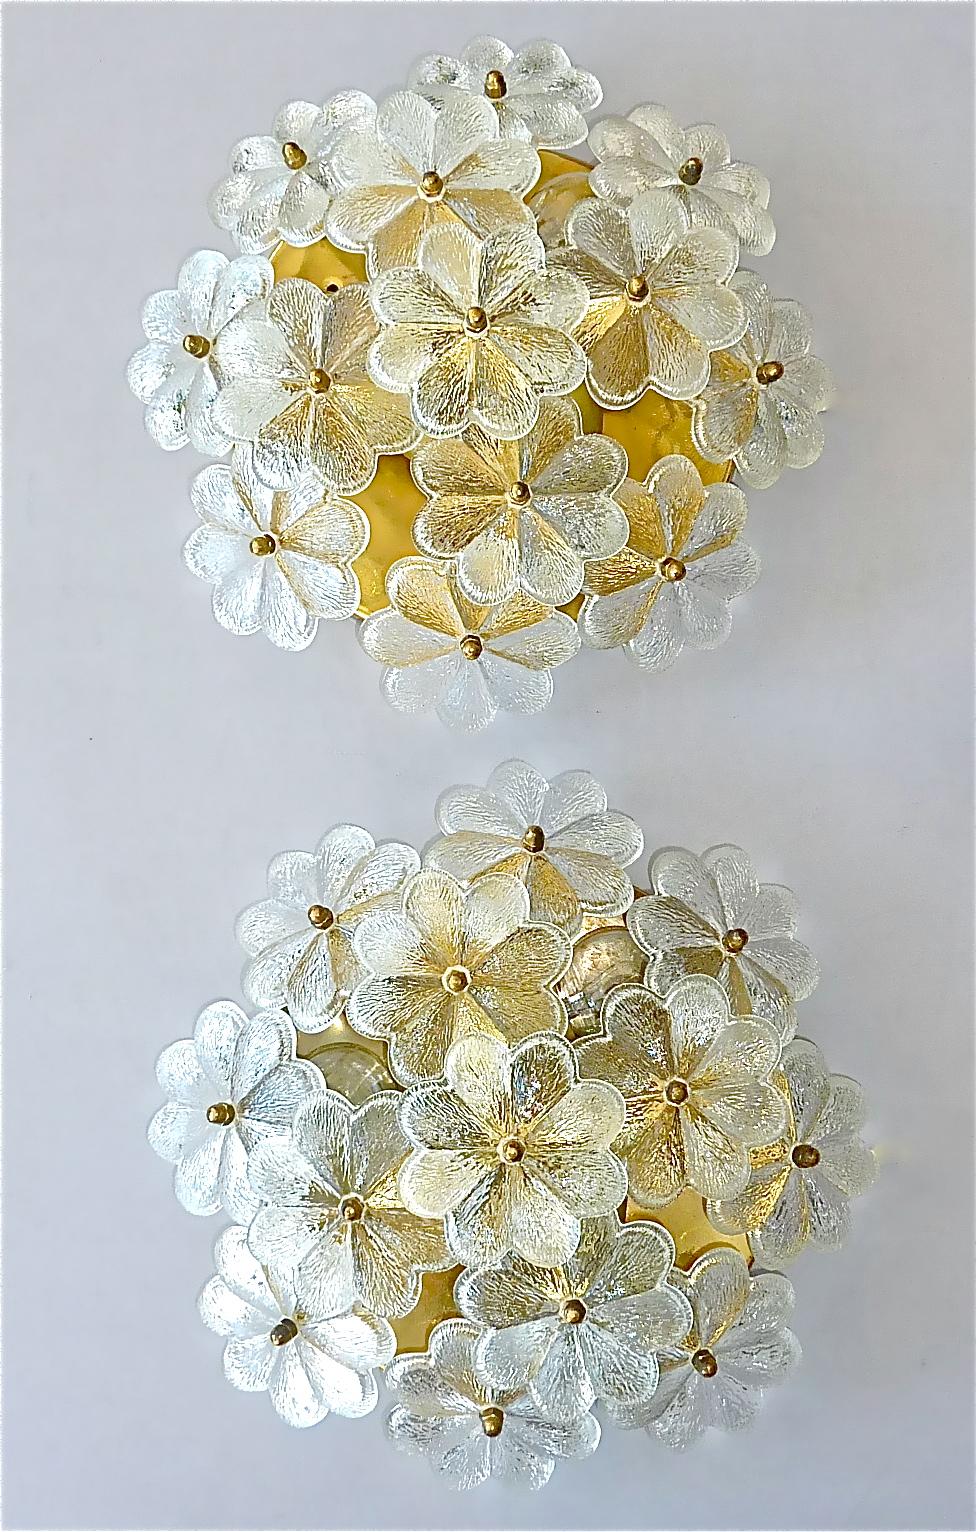 Paar atemberaubende Murano-Kristallglas Blumen Wandleuchten oder flush mount Deckenleuchten von Ernst Palme, Deutschland 1960er bis 1970er Jahre. Die Midcentury-Leuchten haben einen Sockel aus patiniertem, vergoldetem Messing, jeweils drei